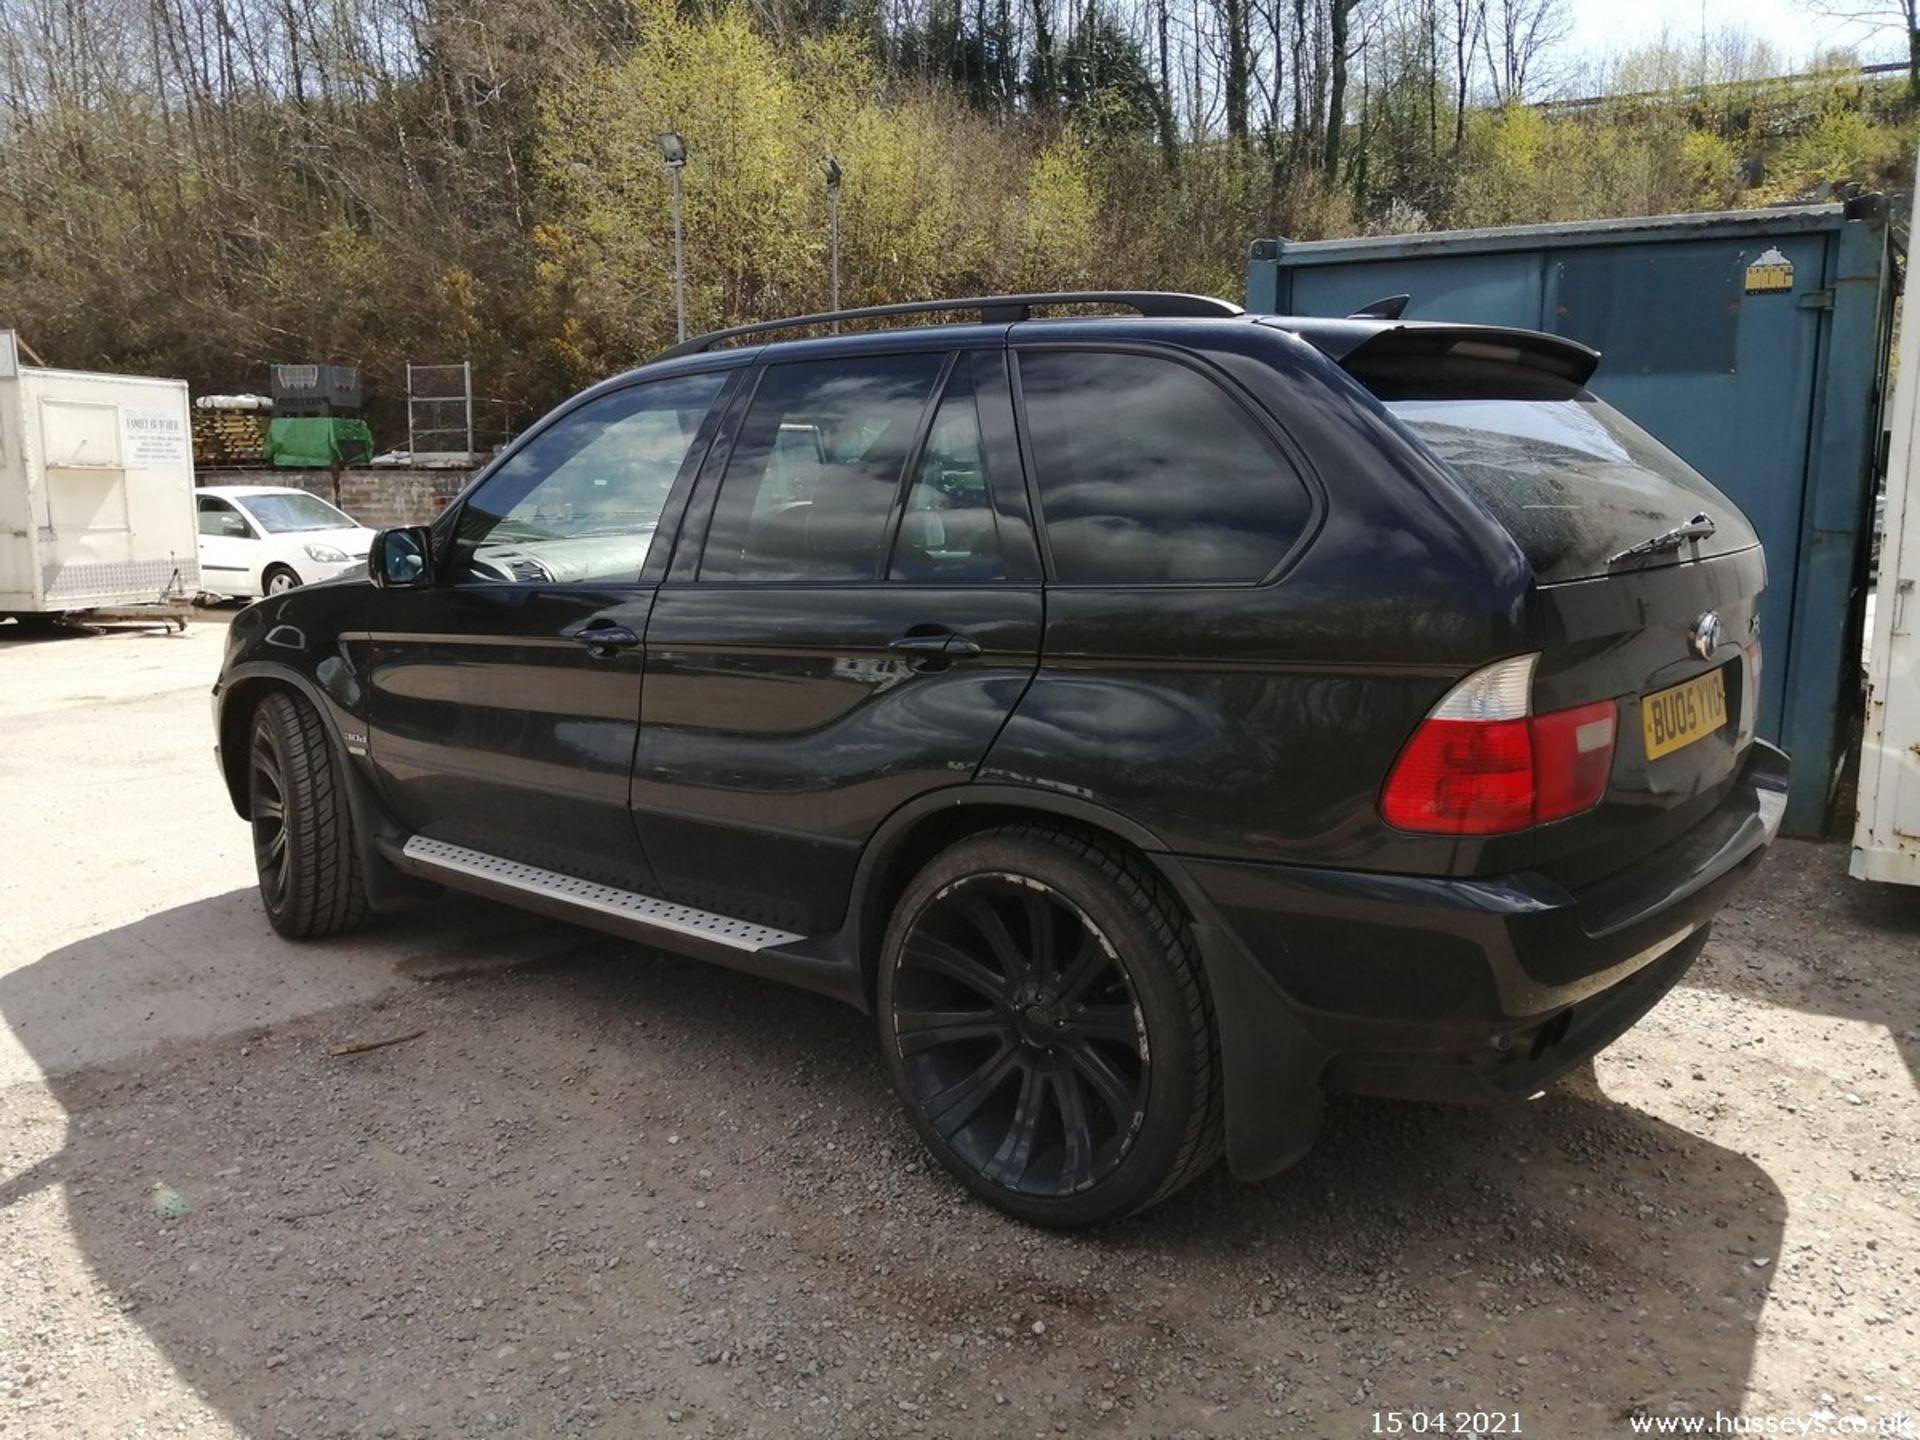 05/05 BMW X5 SPORT D AUTO - 2993cc 5dr Estate (Black) - Image 4 of 11